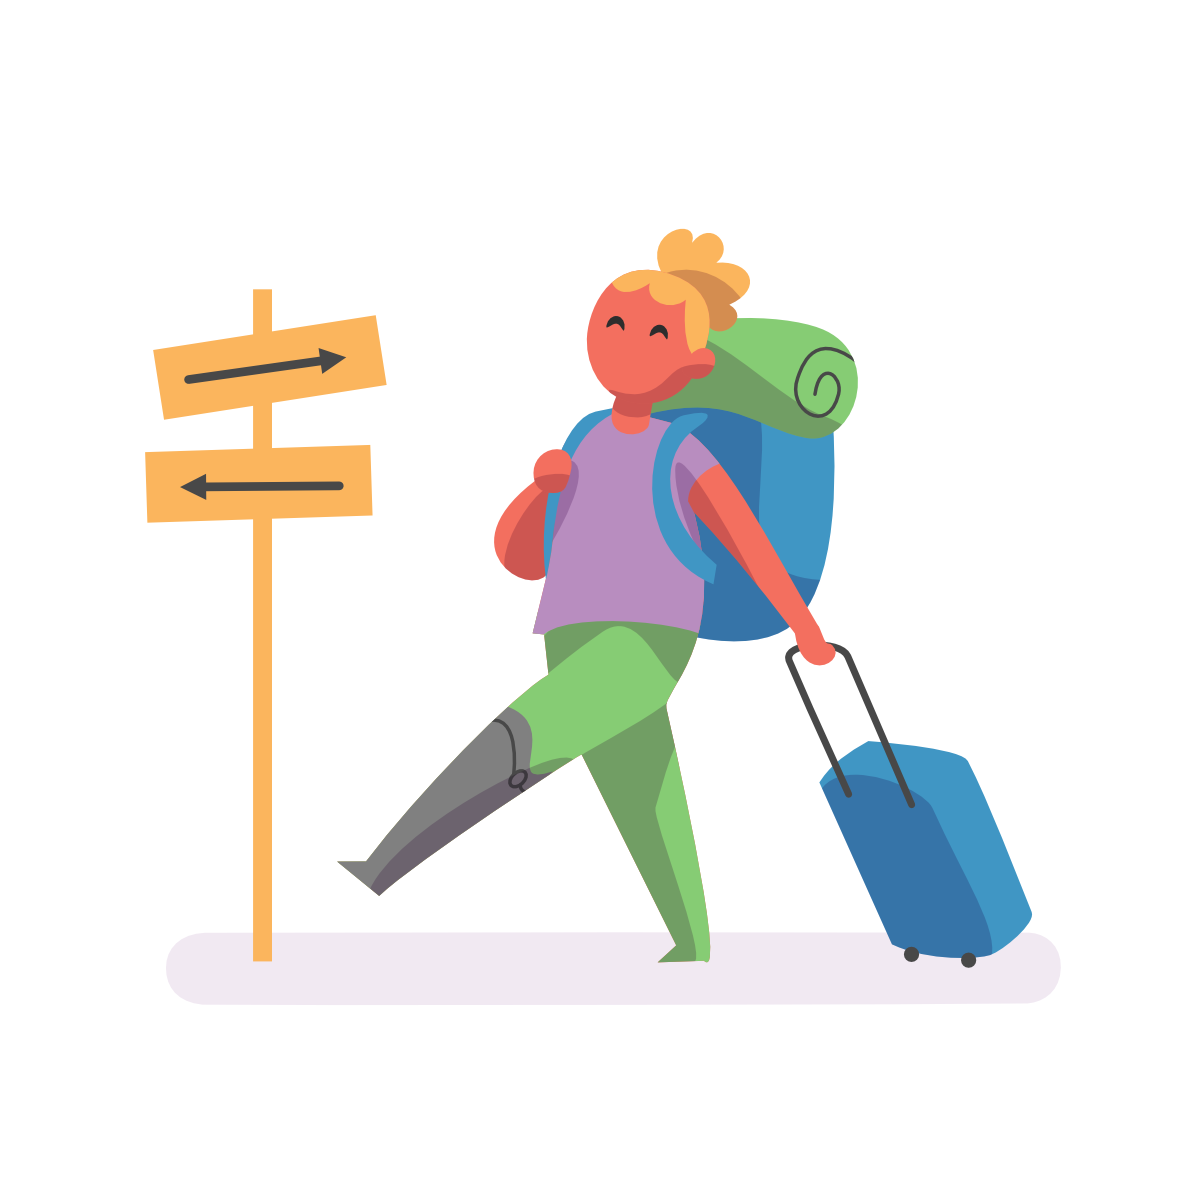 Dibujo de una mujer con mochila y maleta caminando tranquilamente al lado de una señal con dos flechas que señalan a derecha e izquierda.